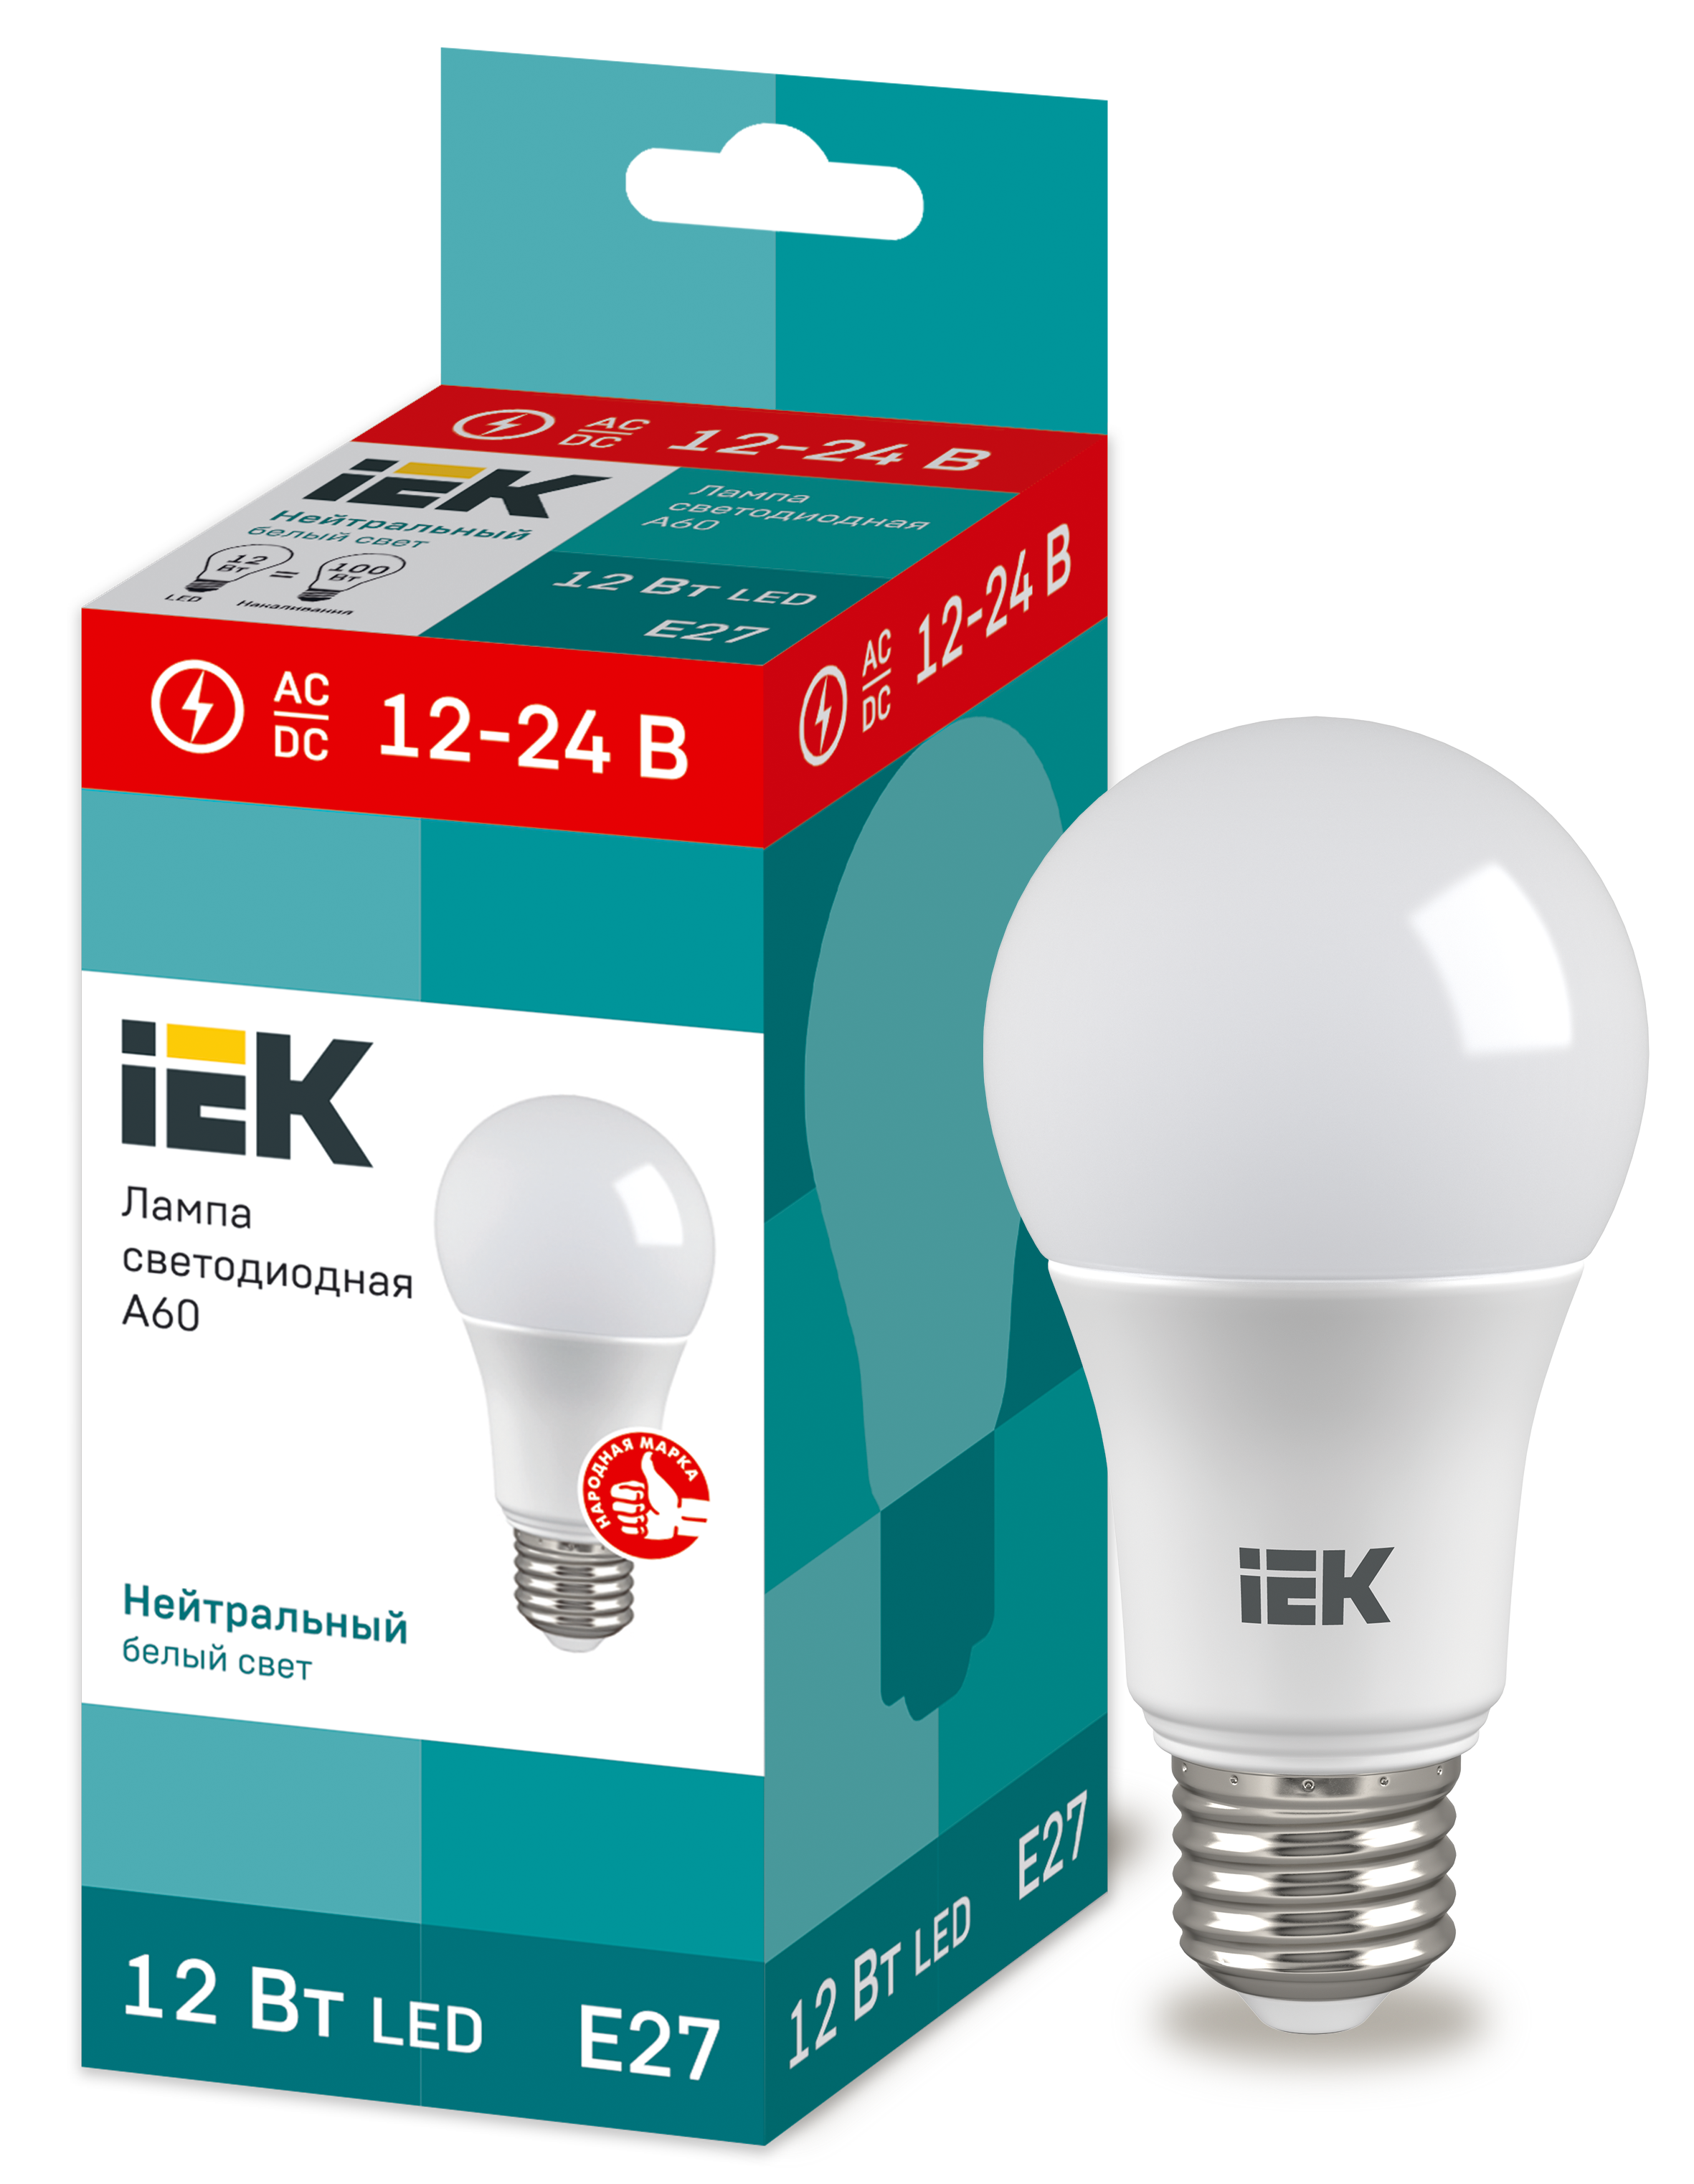 Лампа LED A60 шар 12Вт 12-24В 4000К E27 (низковольтная) IEK